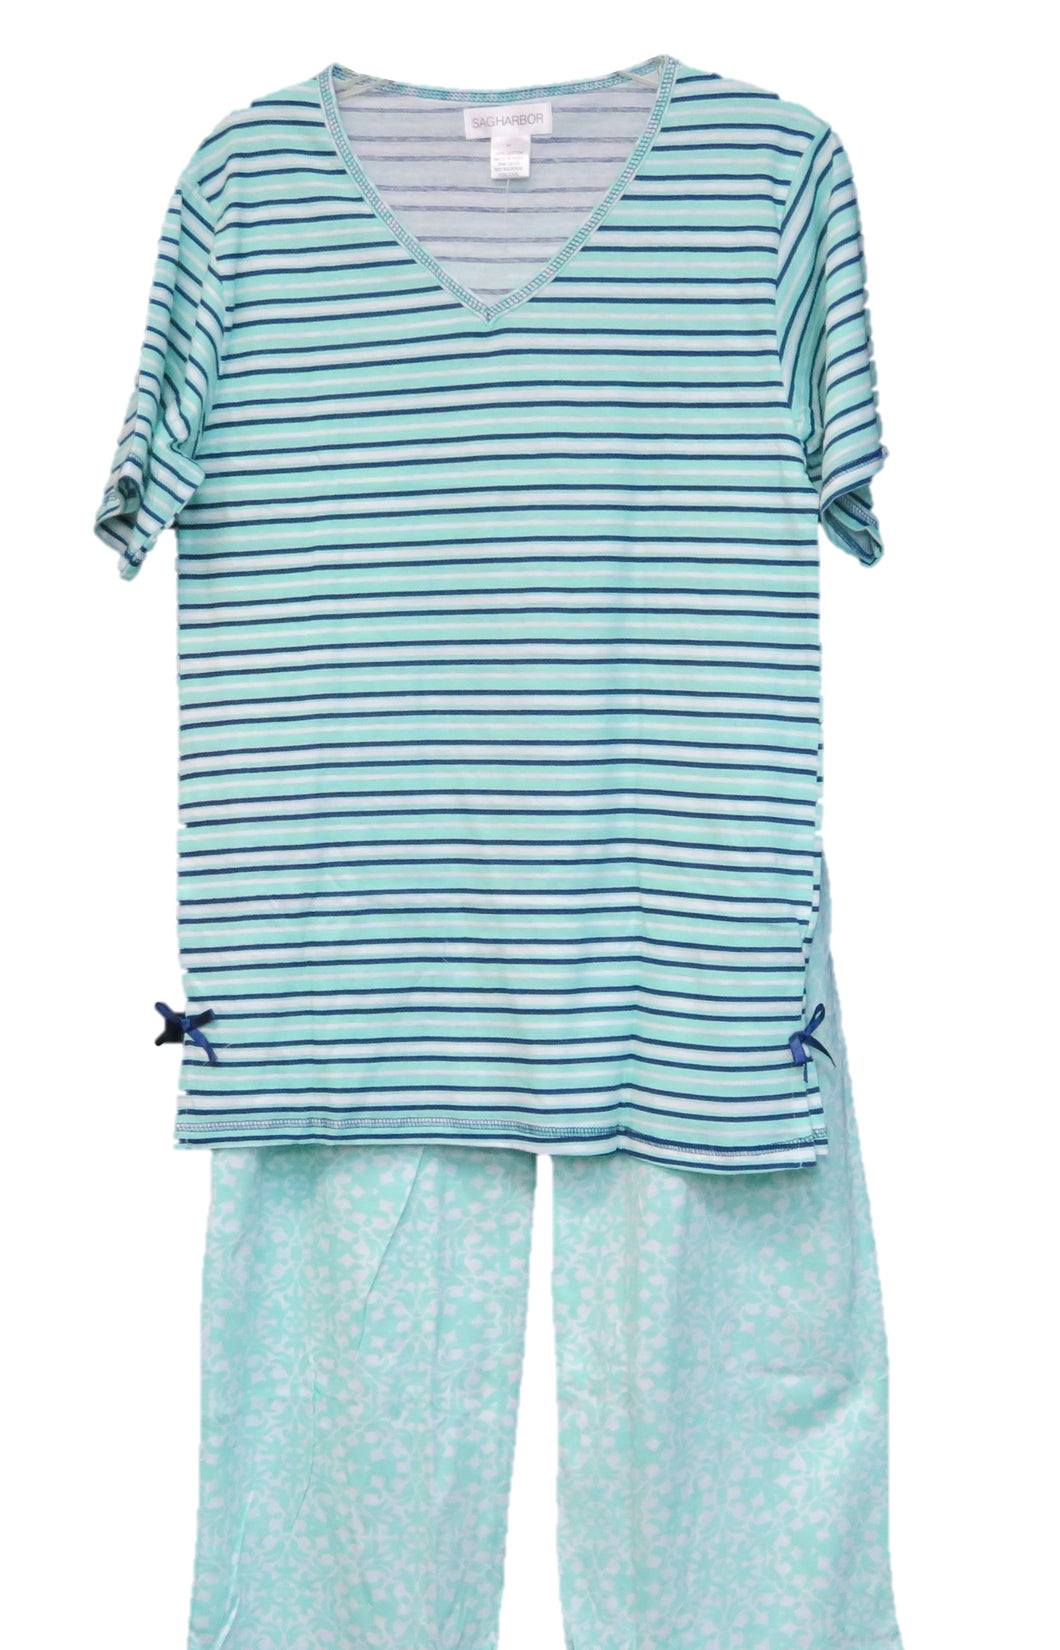 Sag Harbor Sleepwear Pj Sets 100% Cotton Style N98066